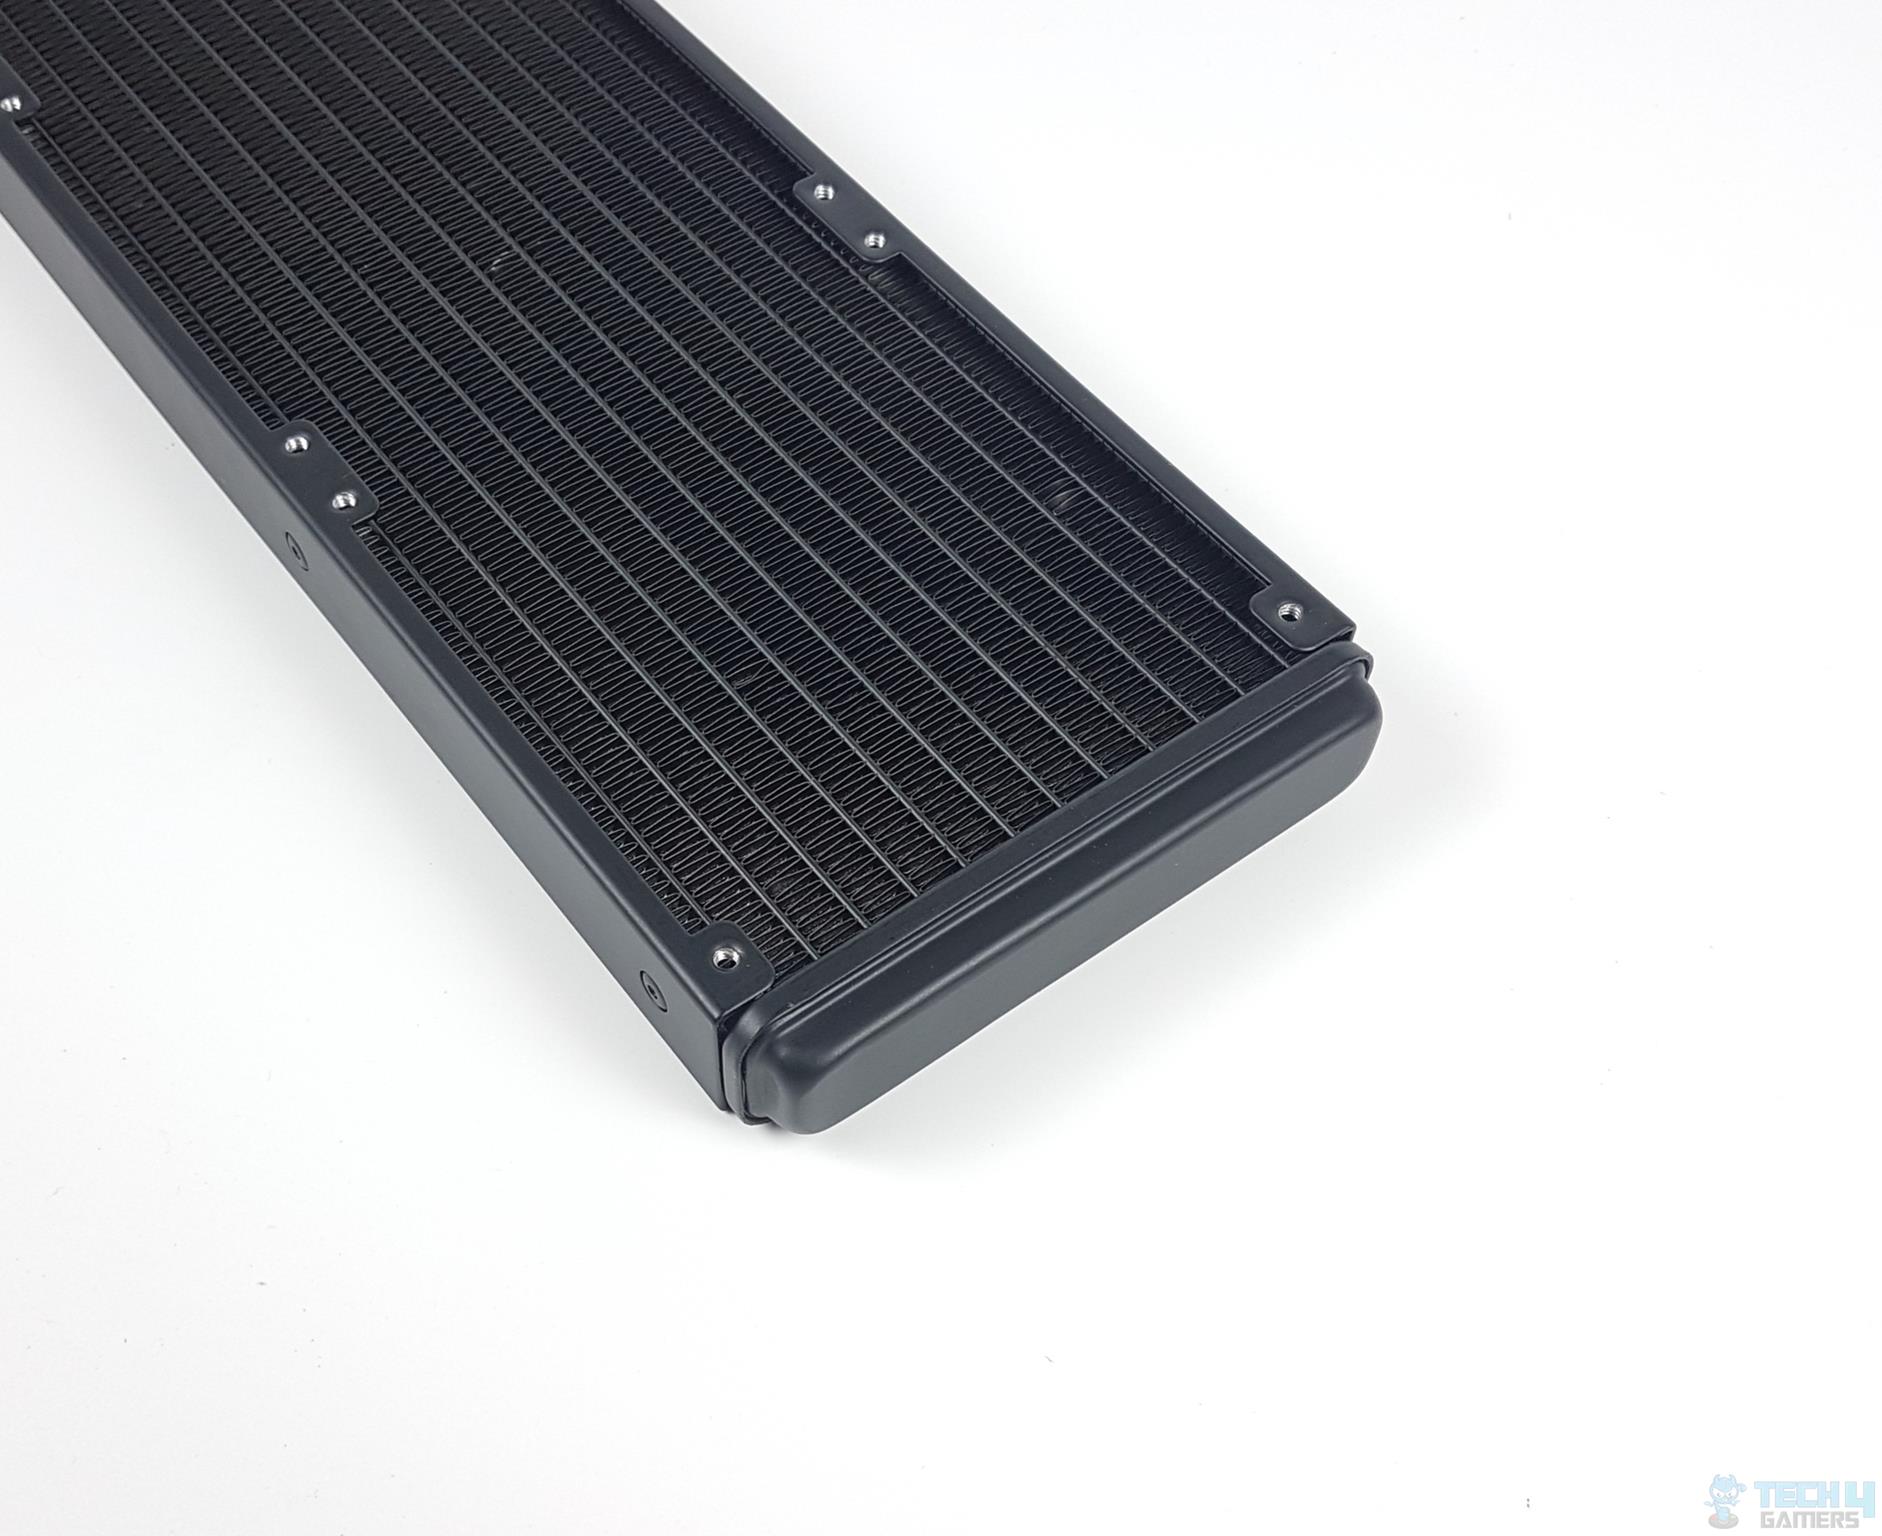 SilverStone iCEGEM 360 Liquid Cooler — The design of the radiator